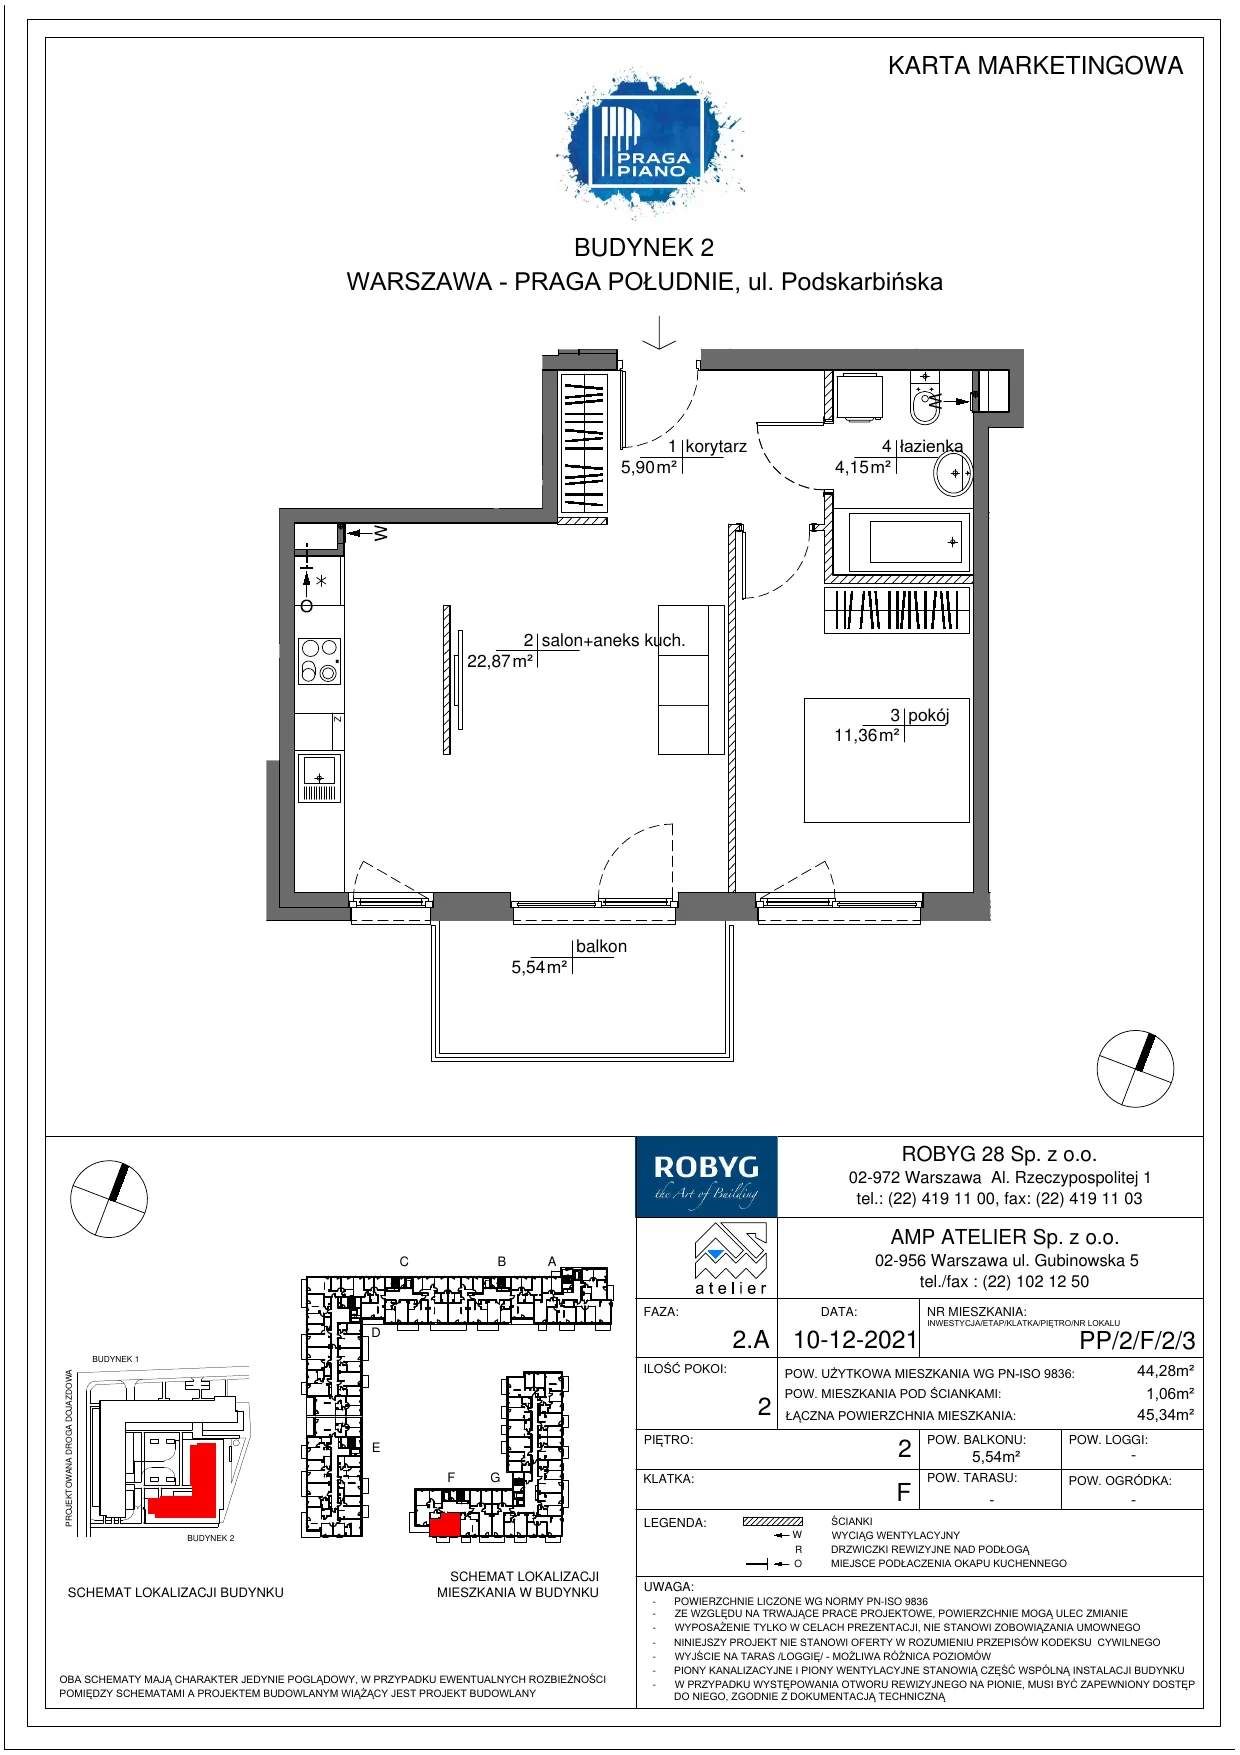 Mieszkanie 44,28 m², piętro 2, oferta nr PP/2/F/2/3, Praga Piano, Warszawa, Praga Południe, Kamionek, ul. Podskarbińska